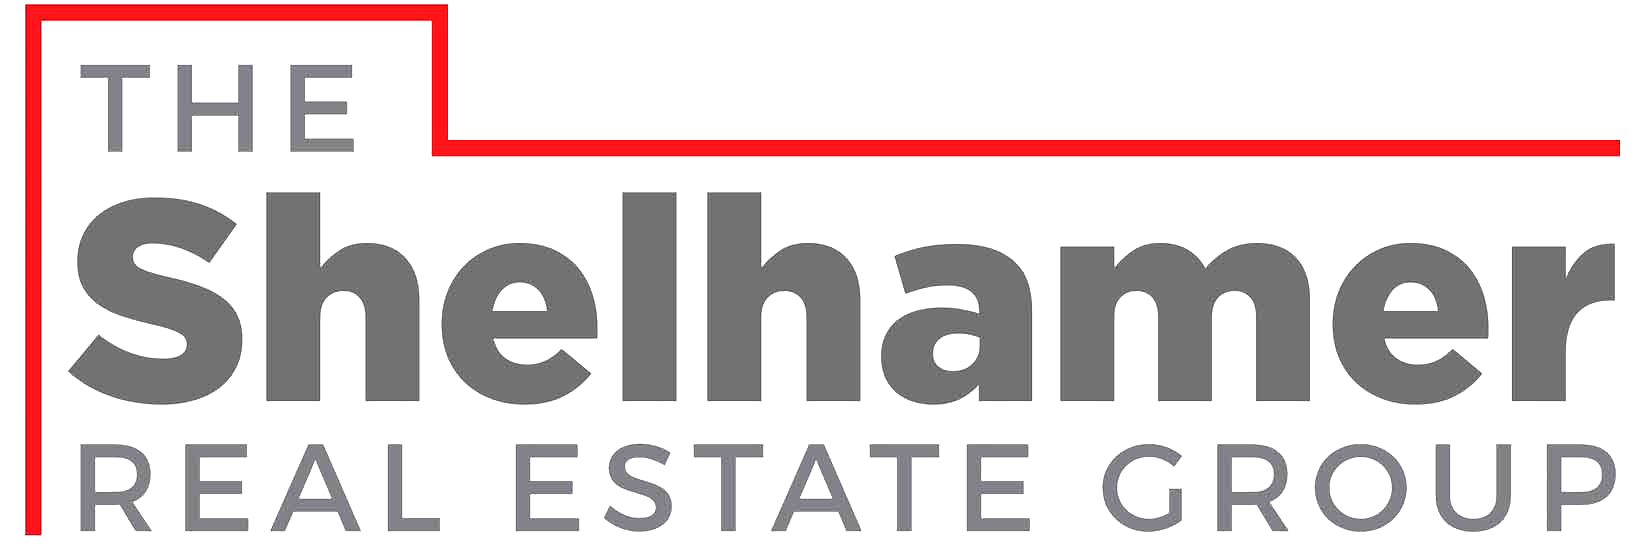 Echo Park Home Under 600k| Echo Park houses for sale | Top Echo Park Realtor Glenn Shelhamer